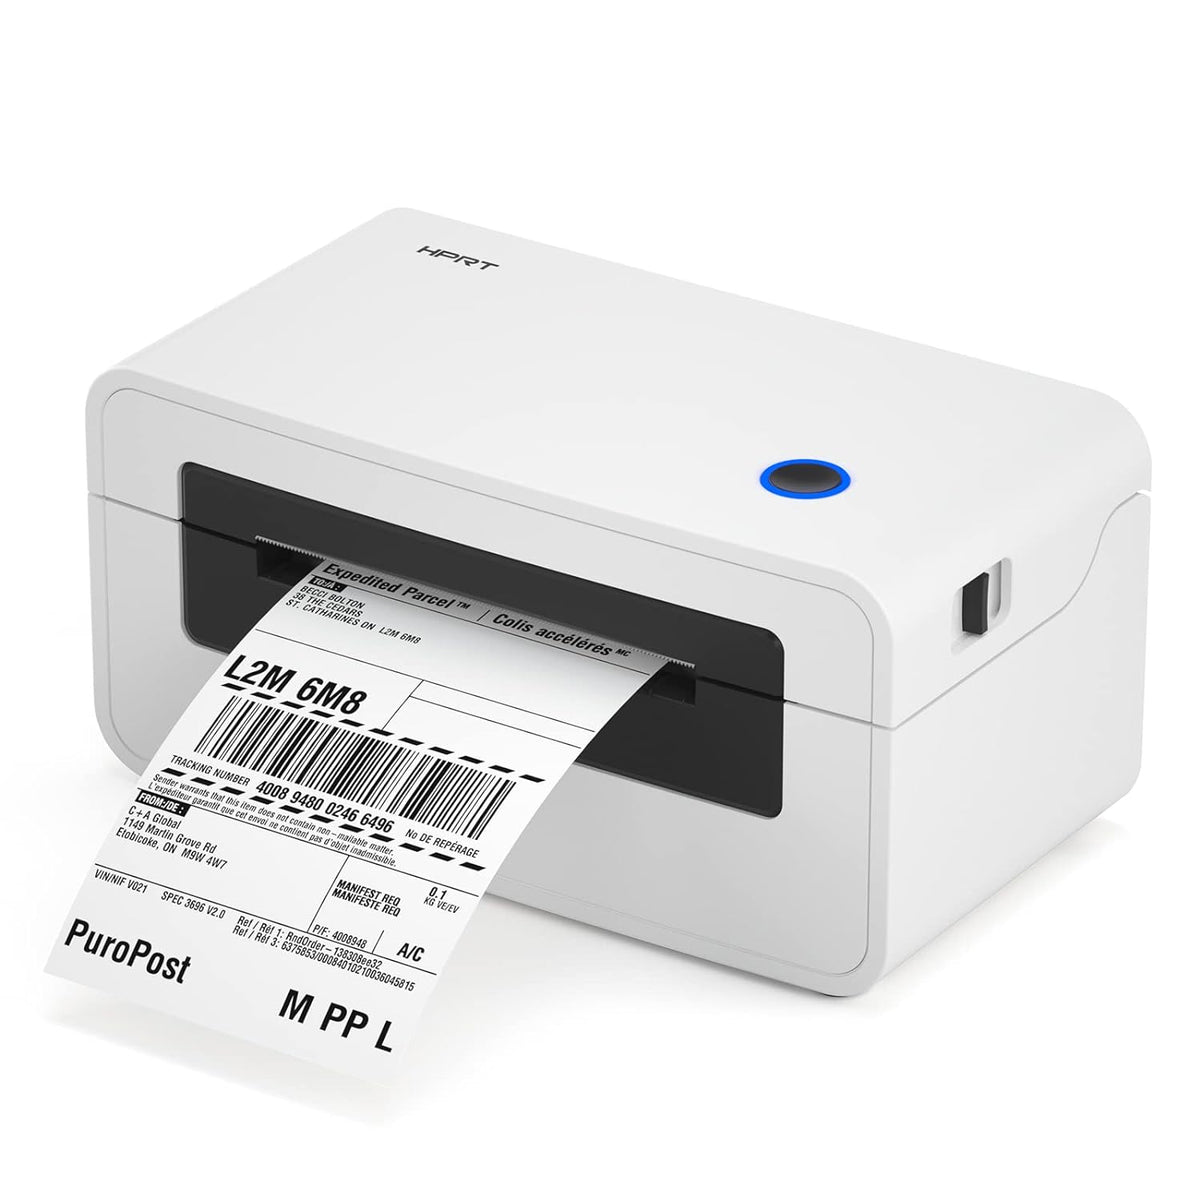 漢印 HPRT N41 中型熱敏標籤打印機 | 藍牙連接手機隨時打印 | 升級之選